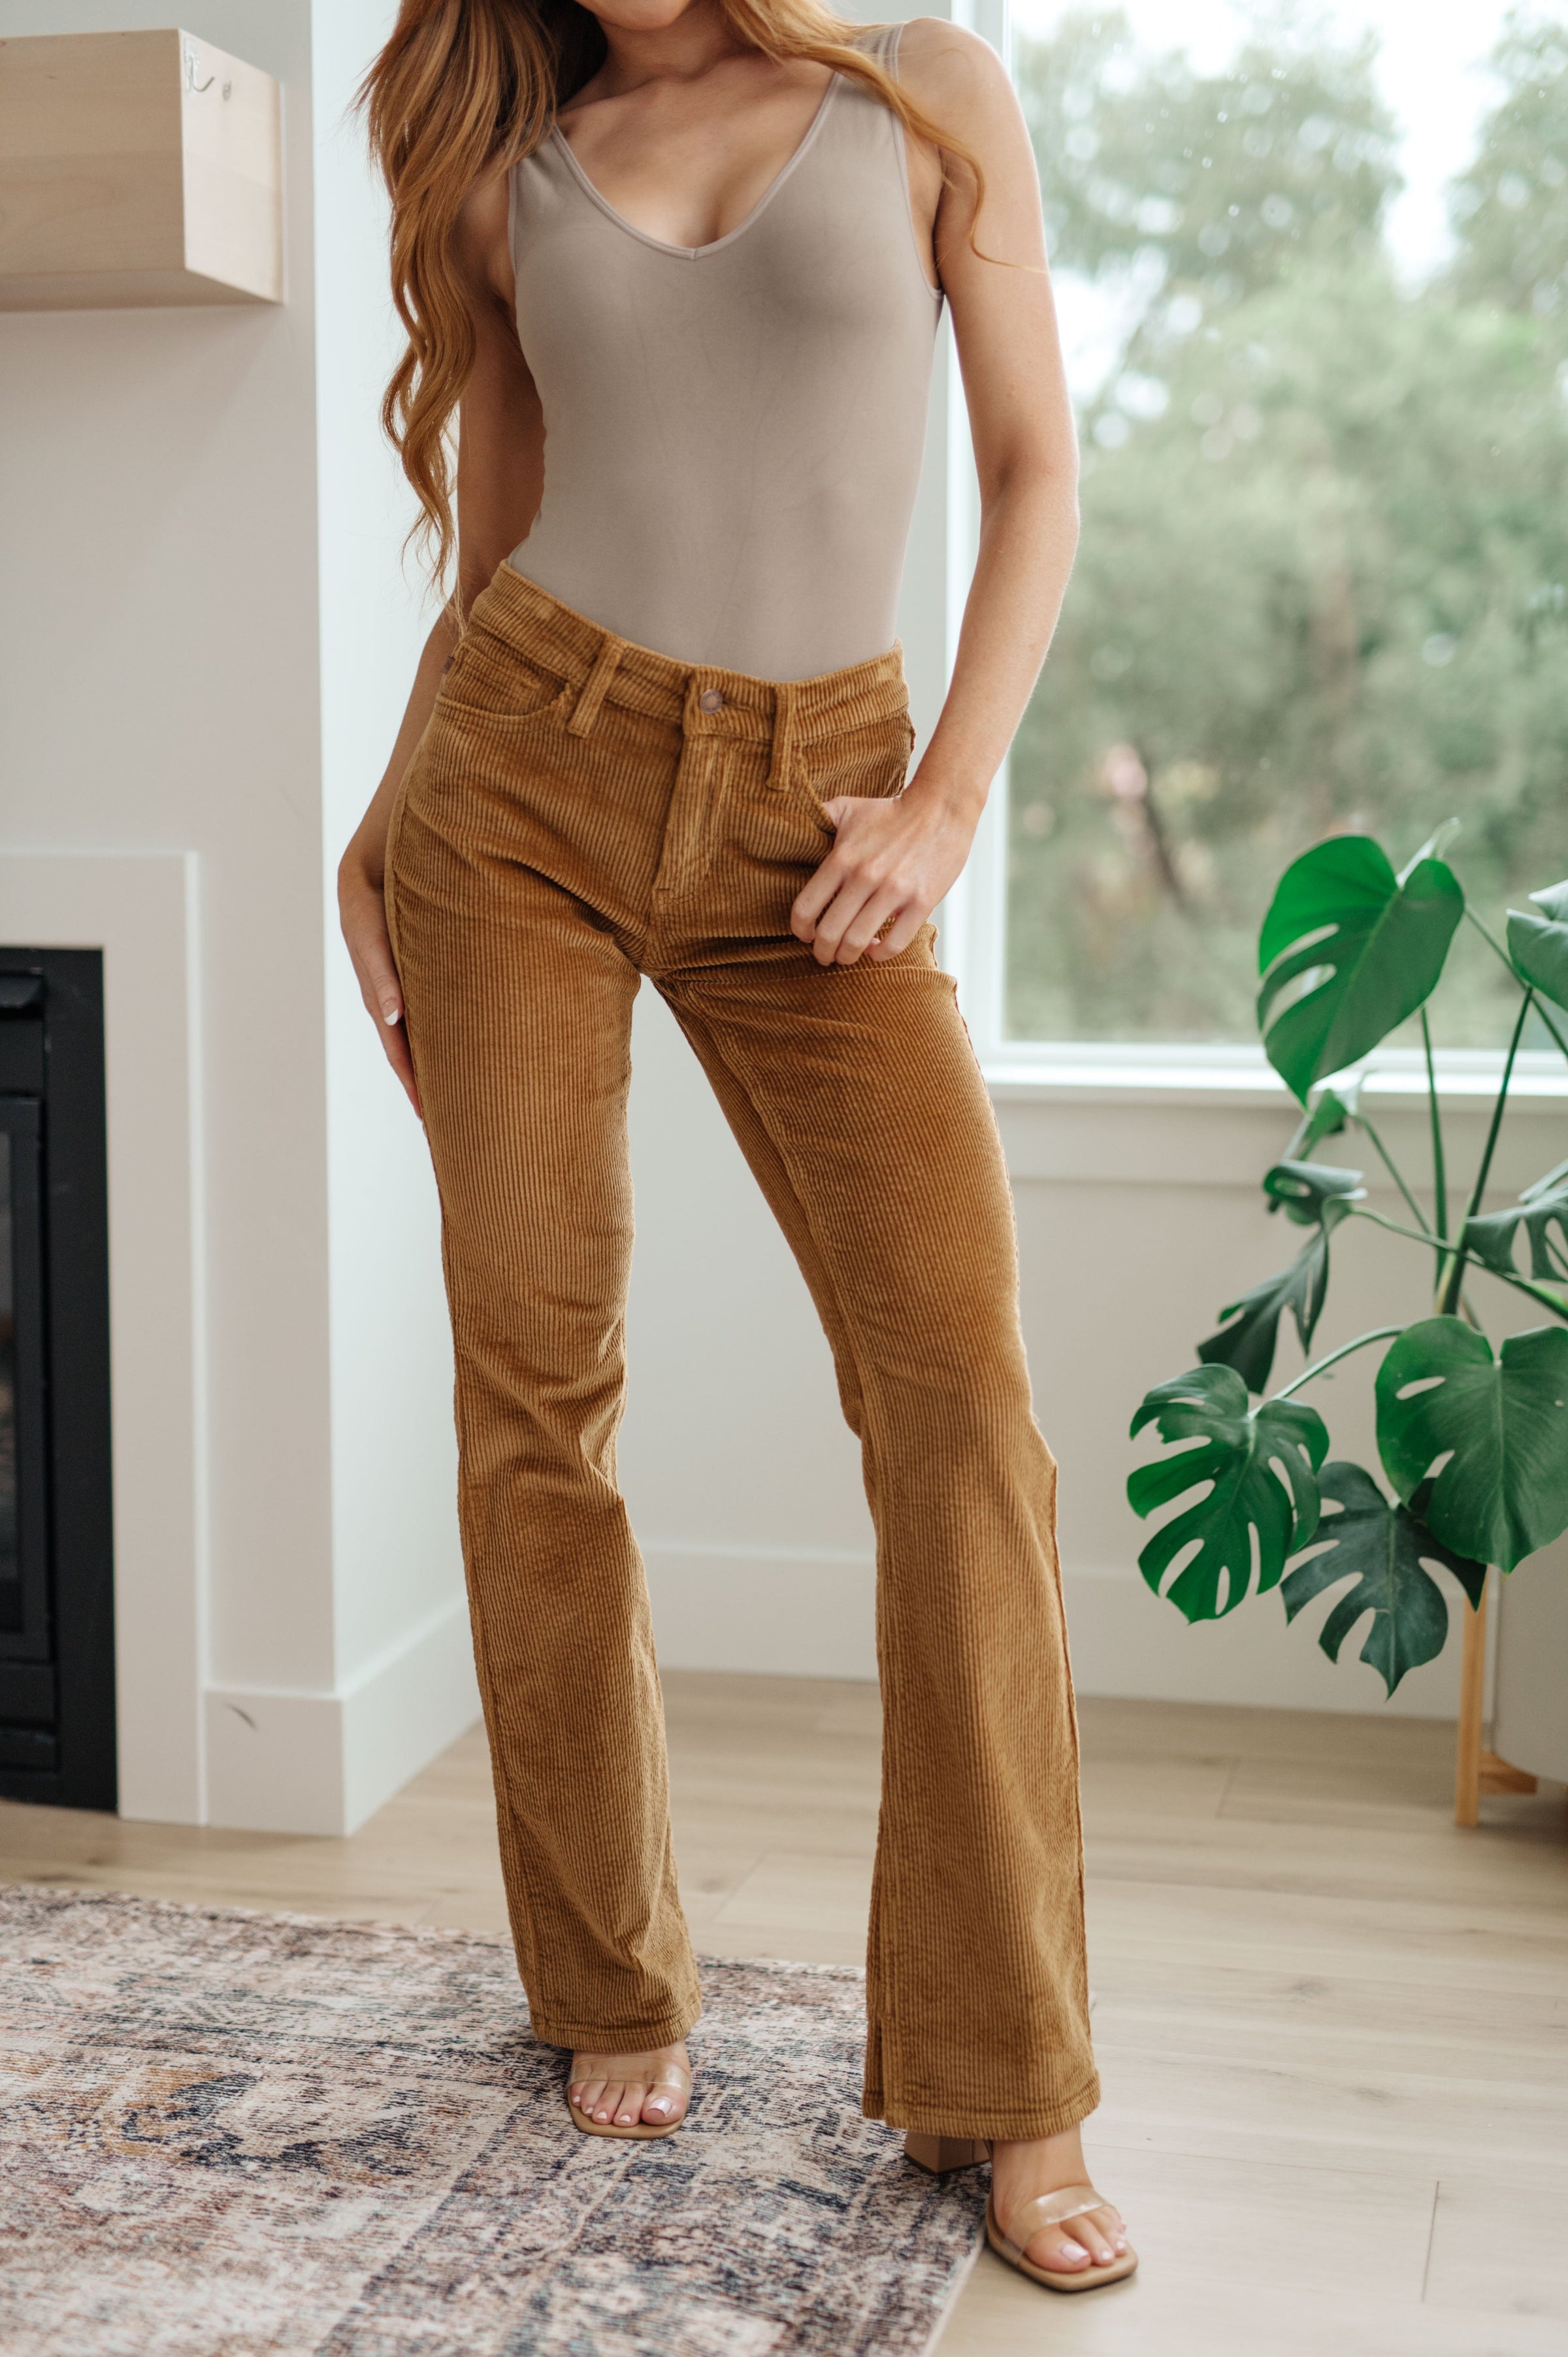 Corduroy bootcut jeans - Woman